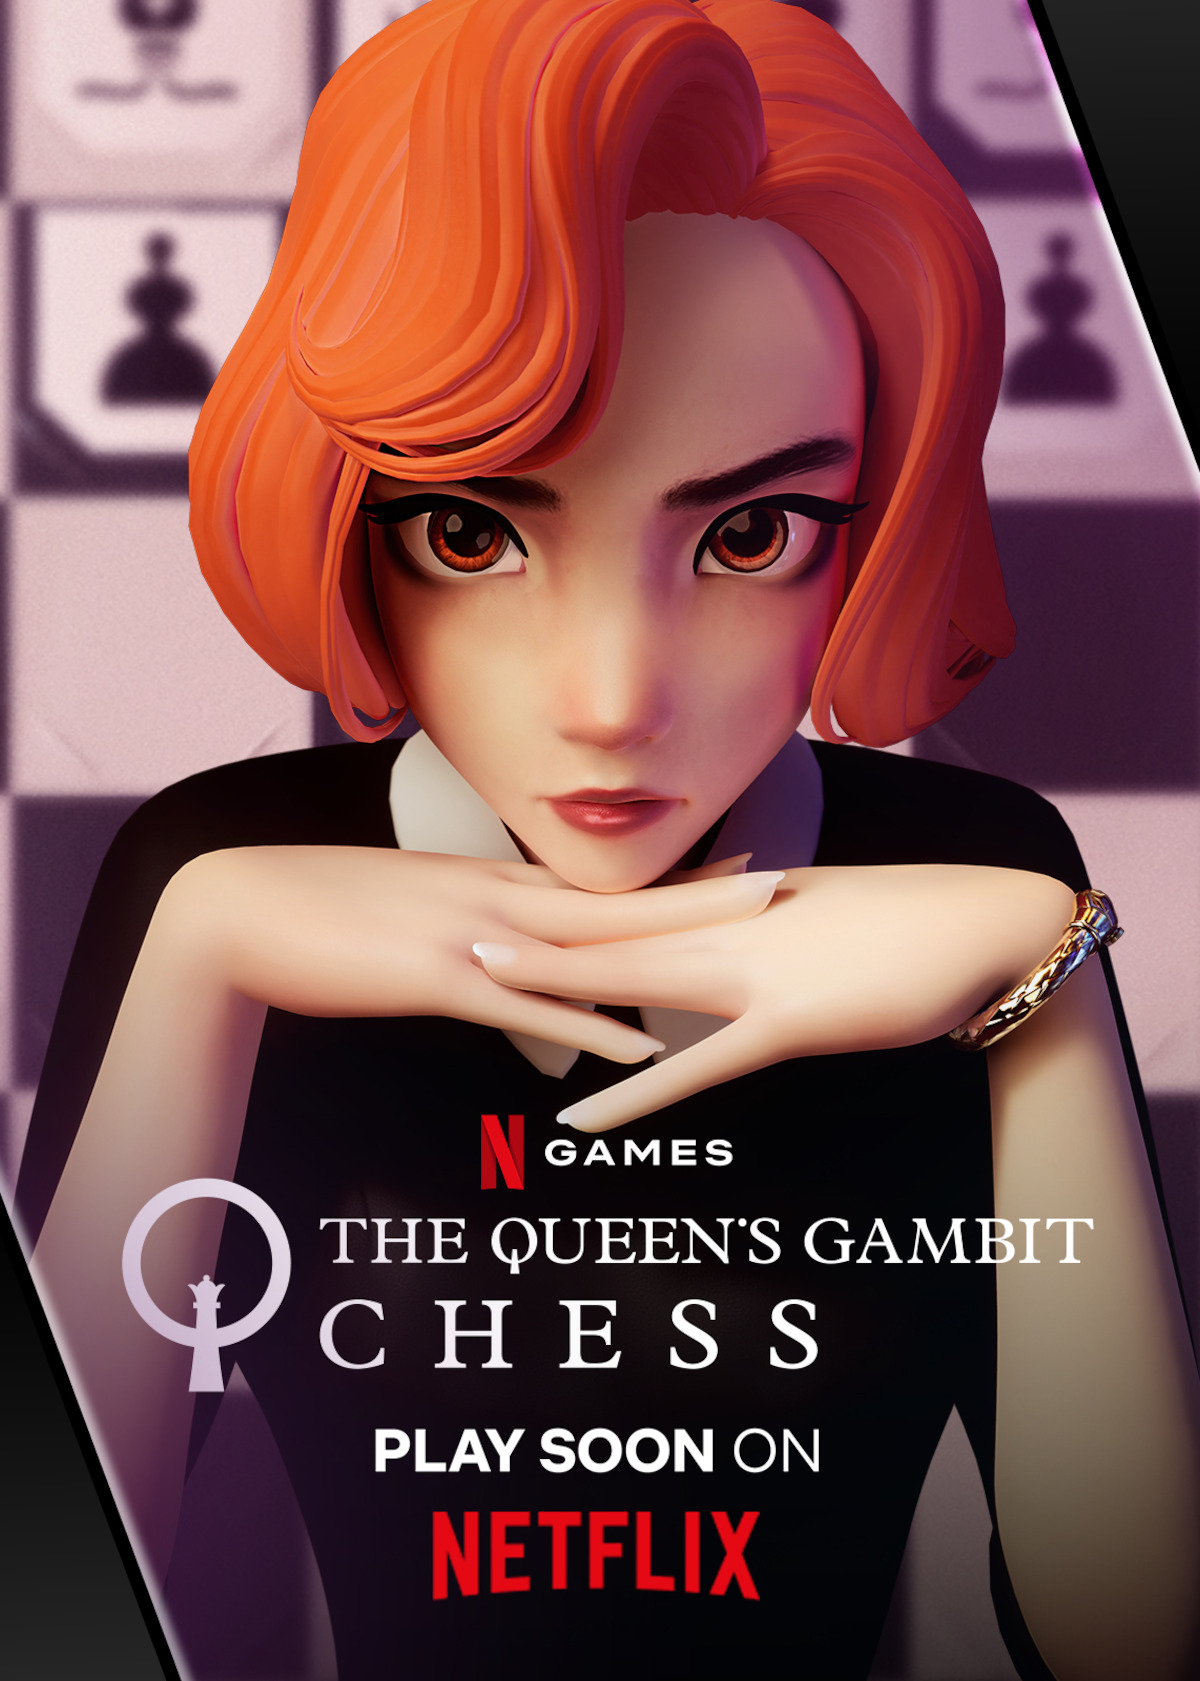 Queen's Gambit' on Netflix: What Actually is 'The Queen's Gambit